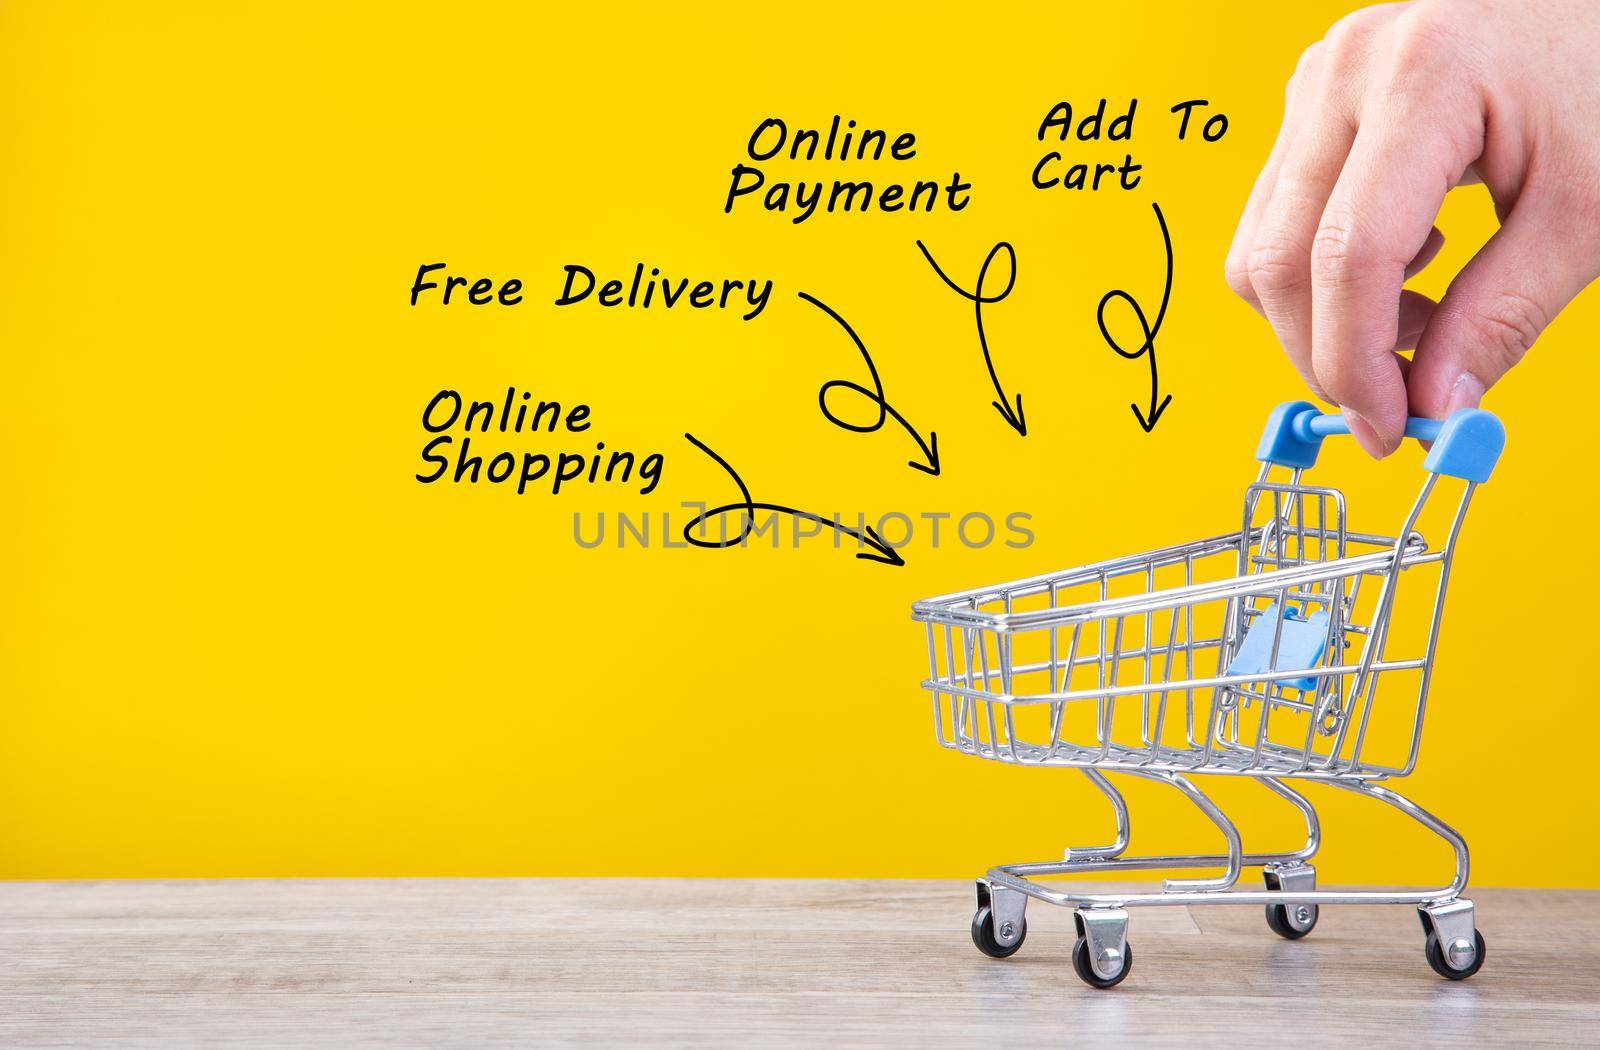 Hand pushing a shopping cart - Online Shopping conceptual